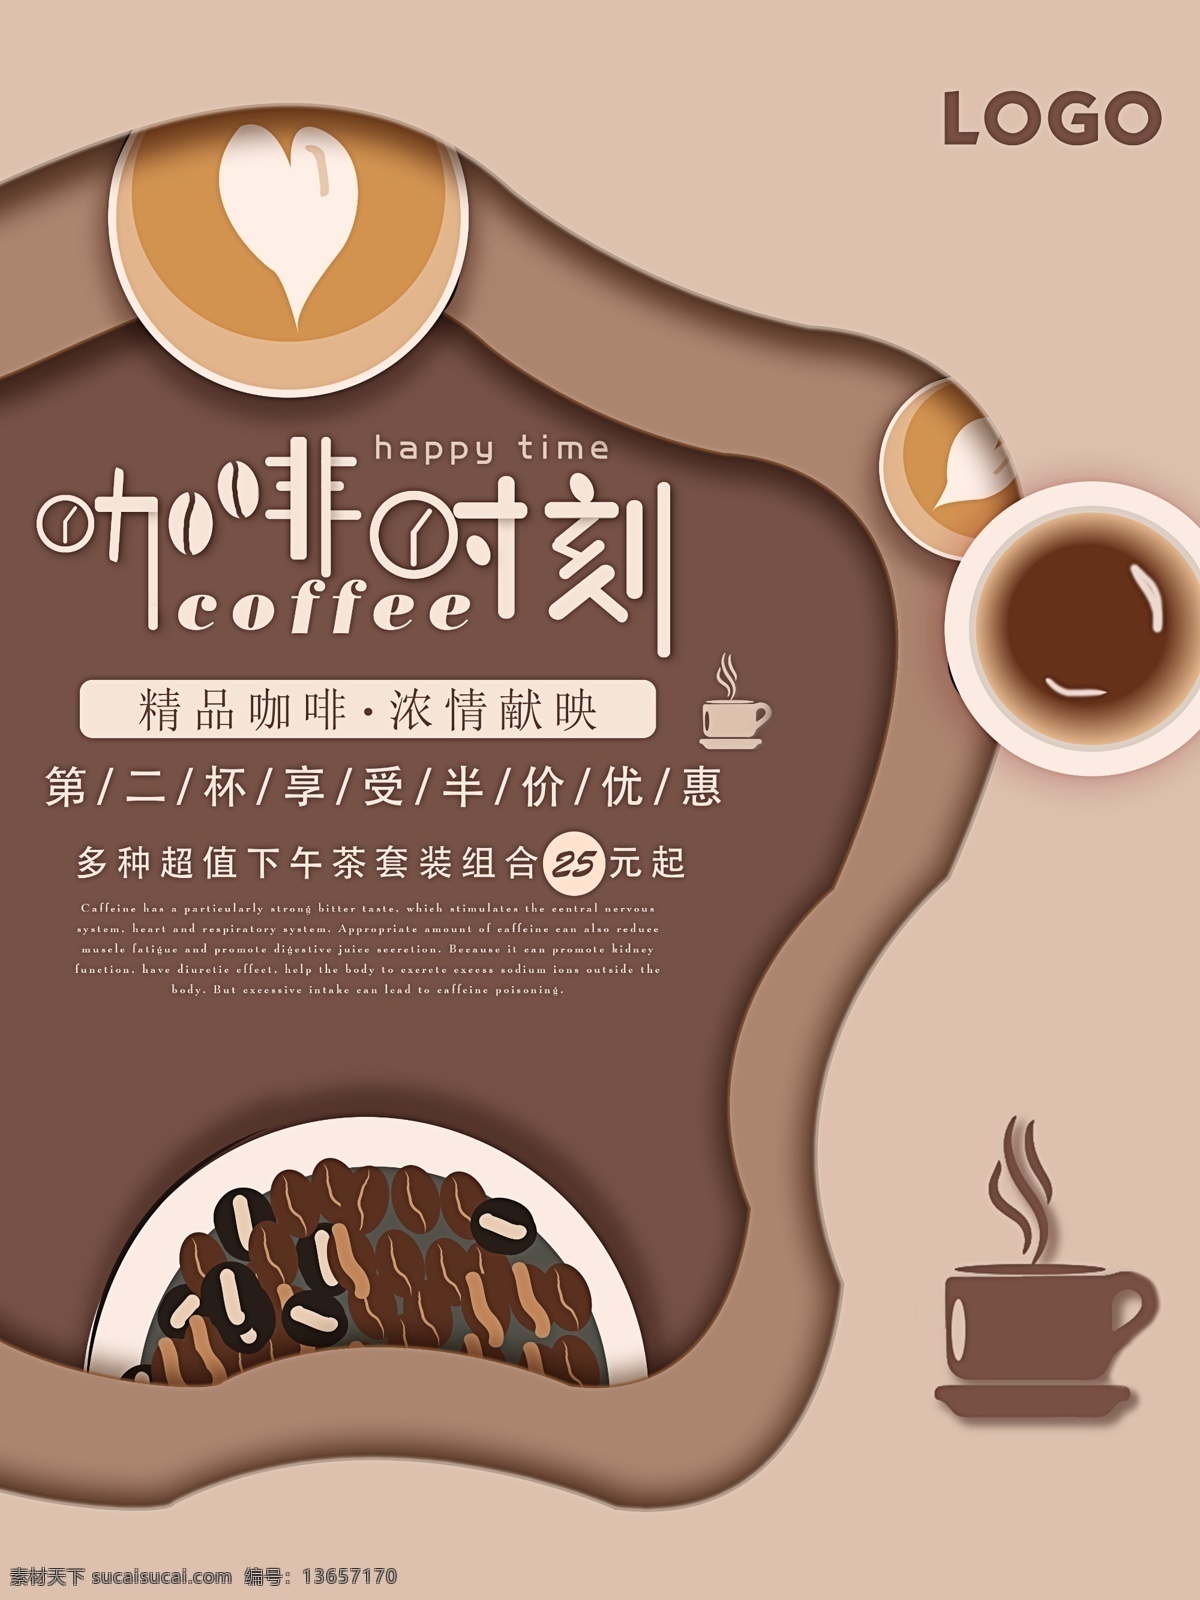 原创 手绘 元素 剪纸 风 咖啡 促销 海报 咖啡海报 咖啡宣传 咖啡促销海报 饮品 手绘咖啡元素 咖啡时刻 咖啡促销优惠